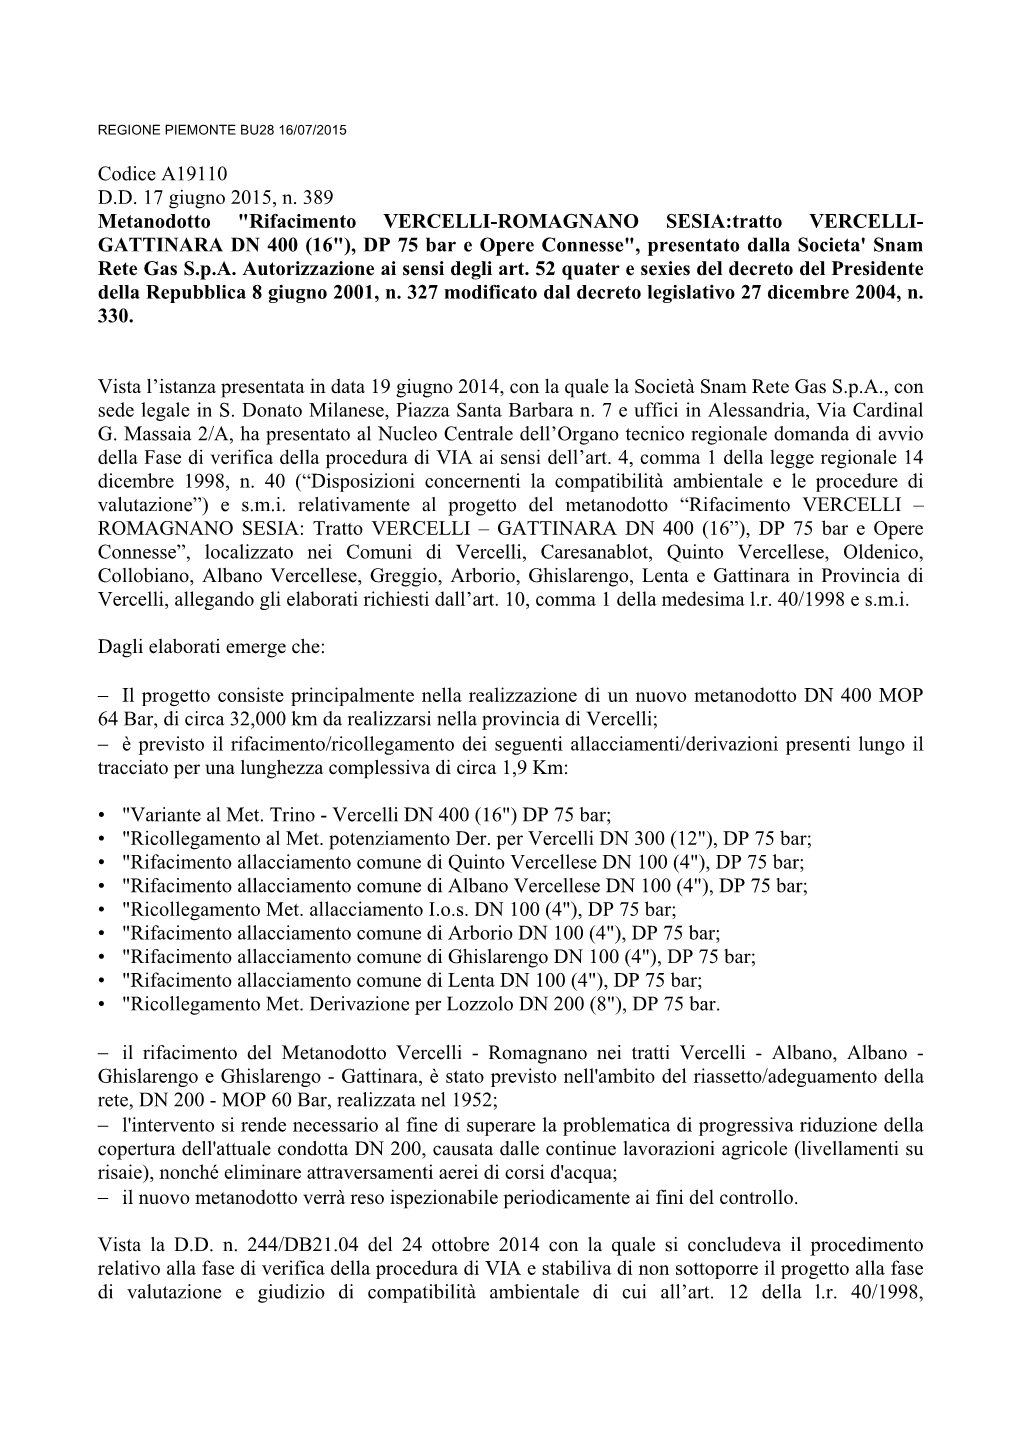 Codice A19110 D.D. 17 Giugno 2015, N. 389 Metanodotto "Rifacimento